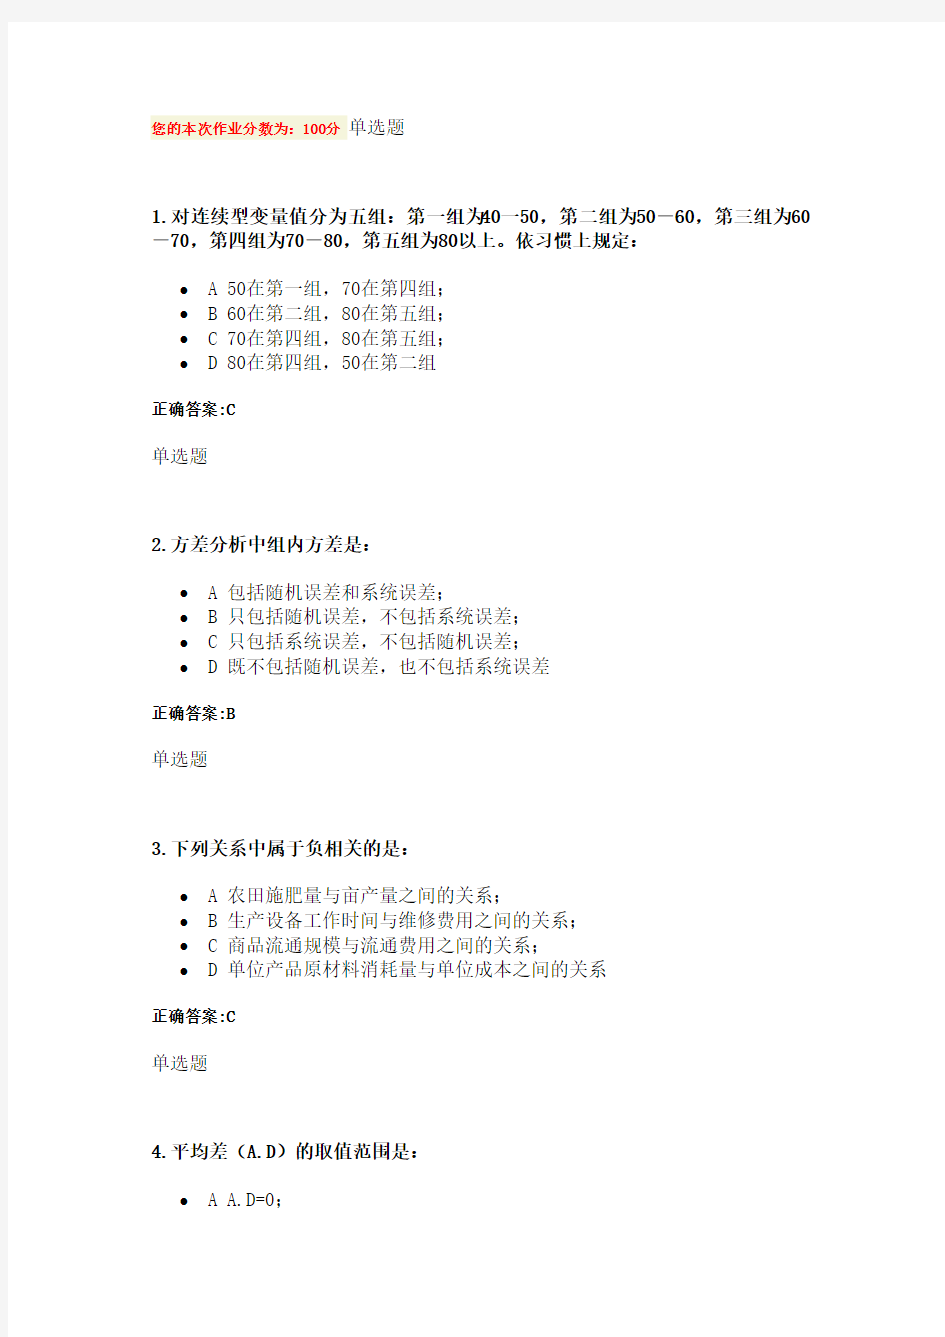 浙大远程 管理统计学 在线作业 答案.